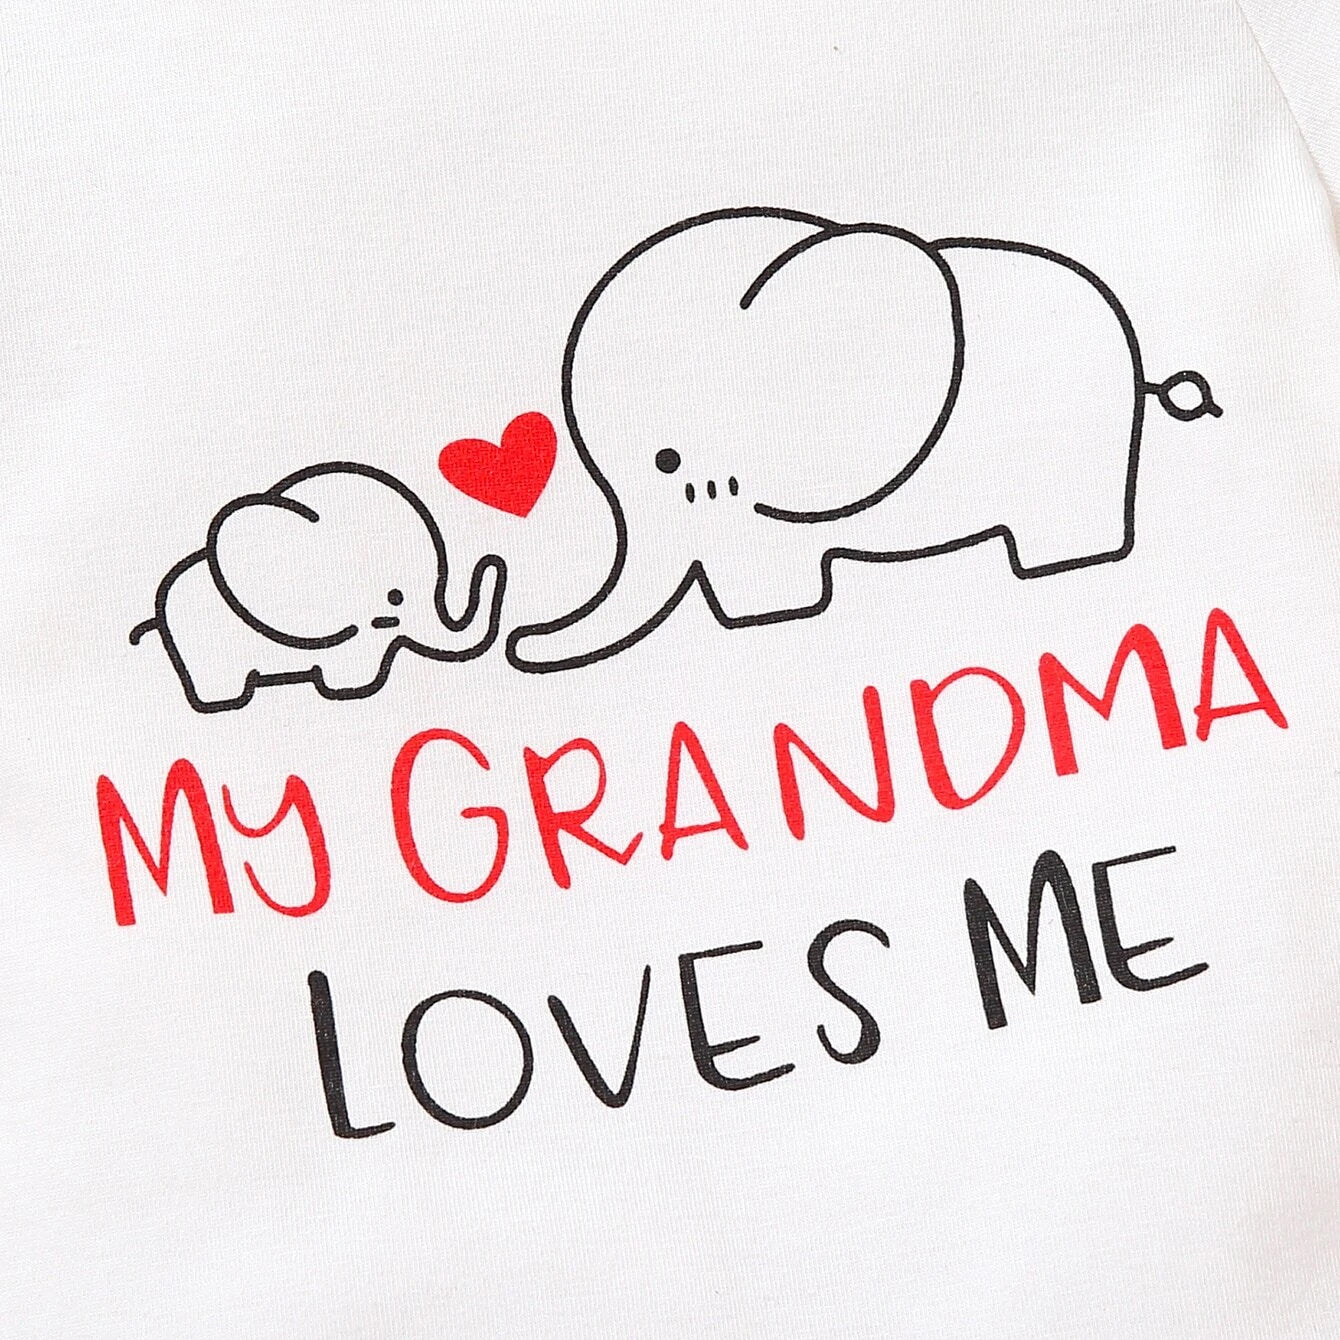 Precioso mameluco de bebé con estampado de elefante y letras My Grandma Loves Me